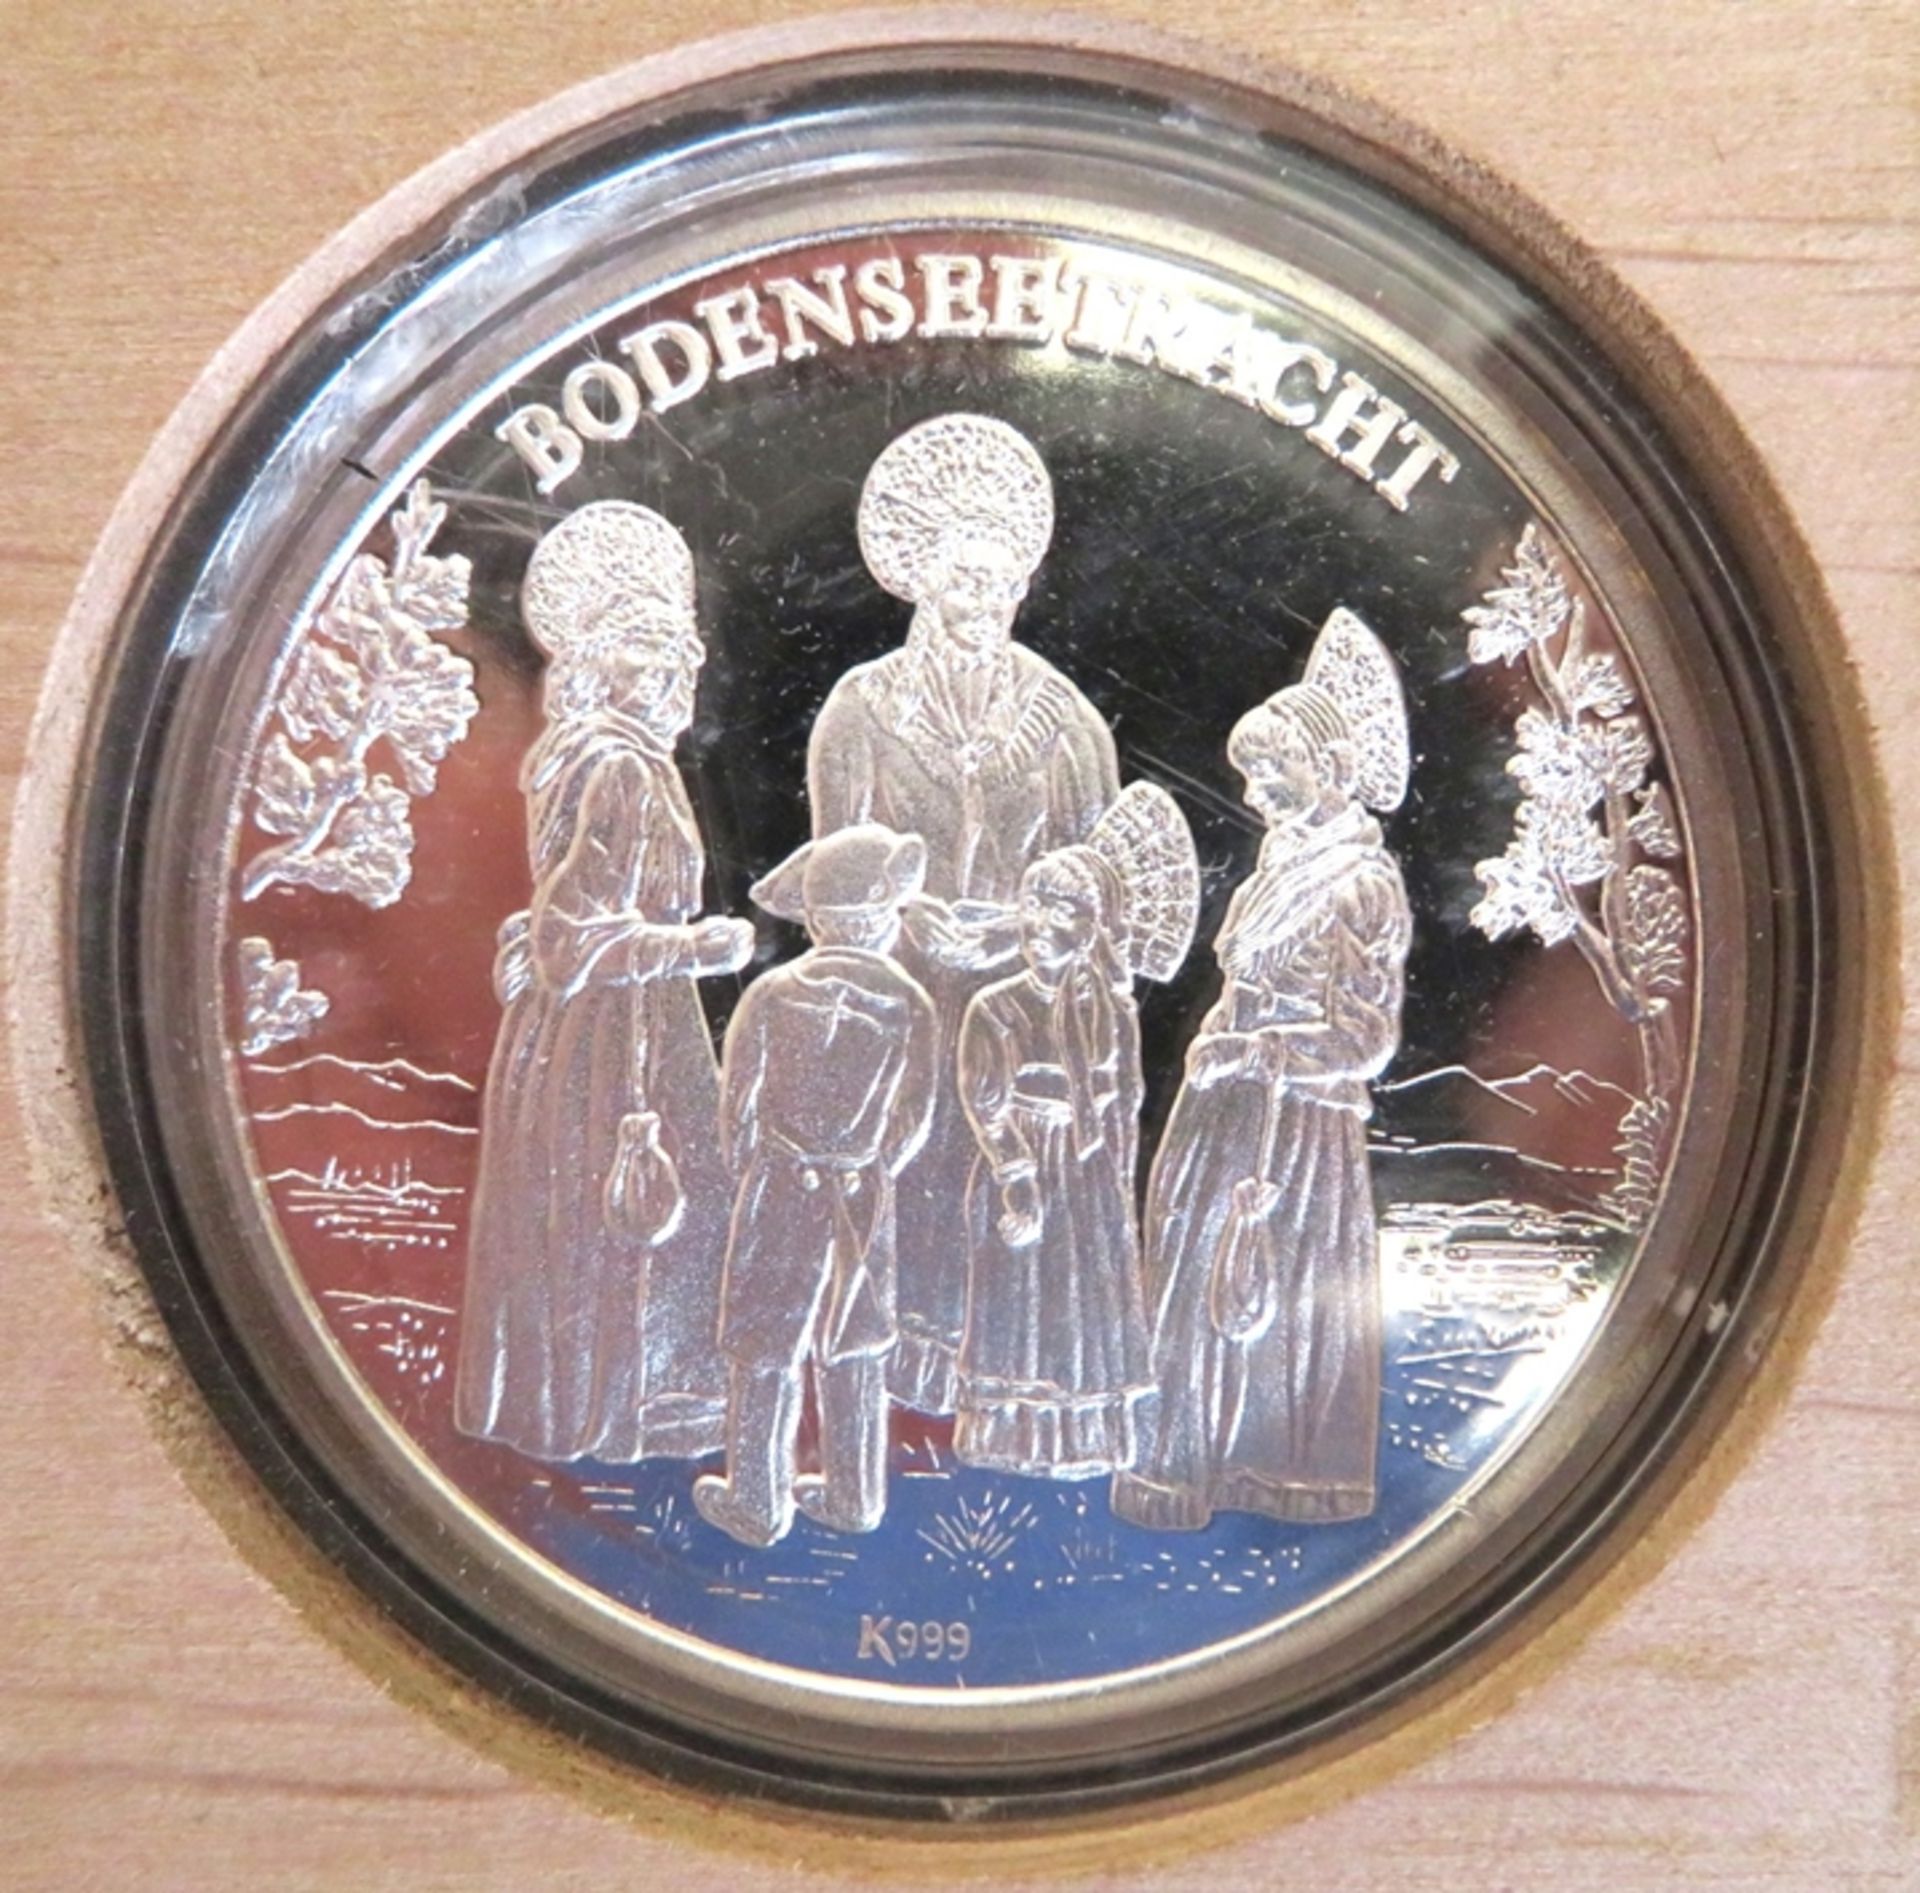 Medaille, Bodensee Thaler, Feinsilber 999/000, punziert, 26 g, PP, Original-Holz-Etui, d 4 cm.